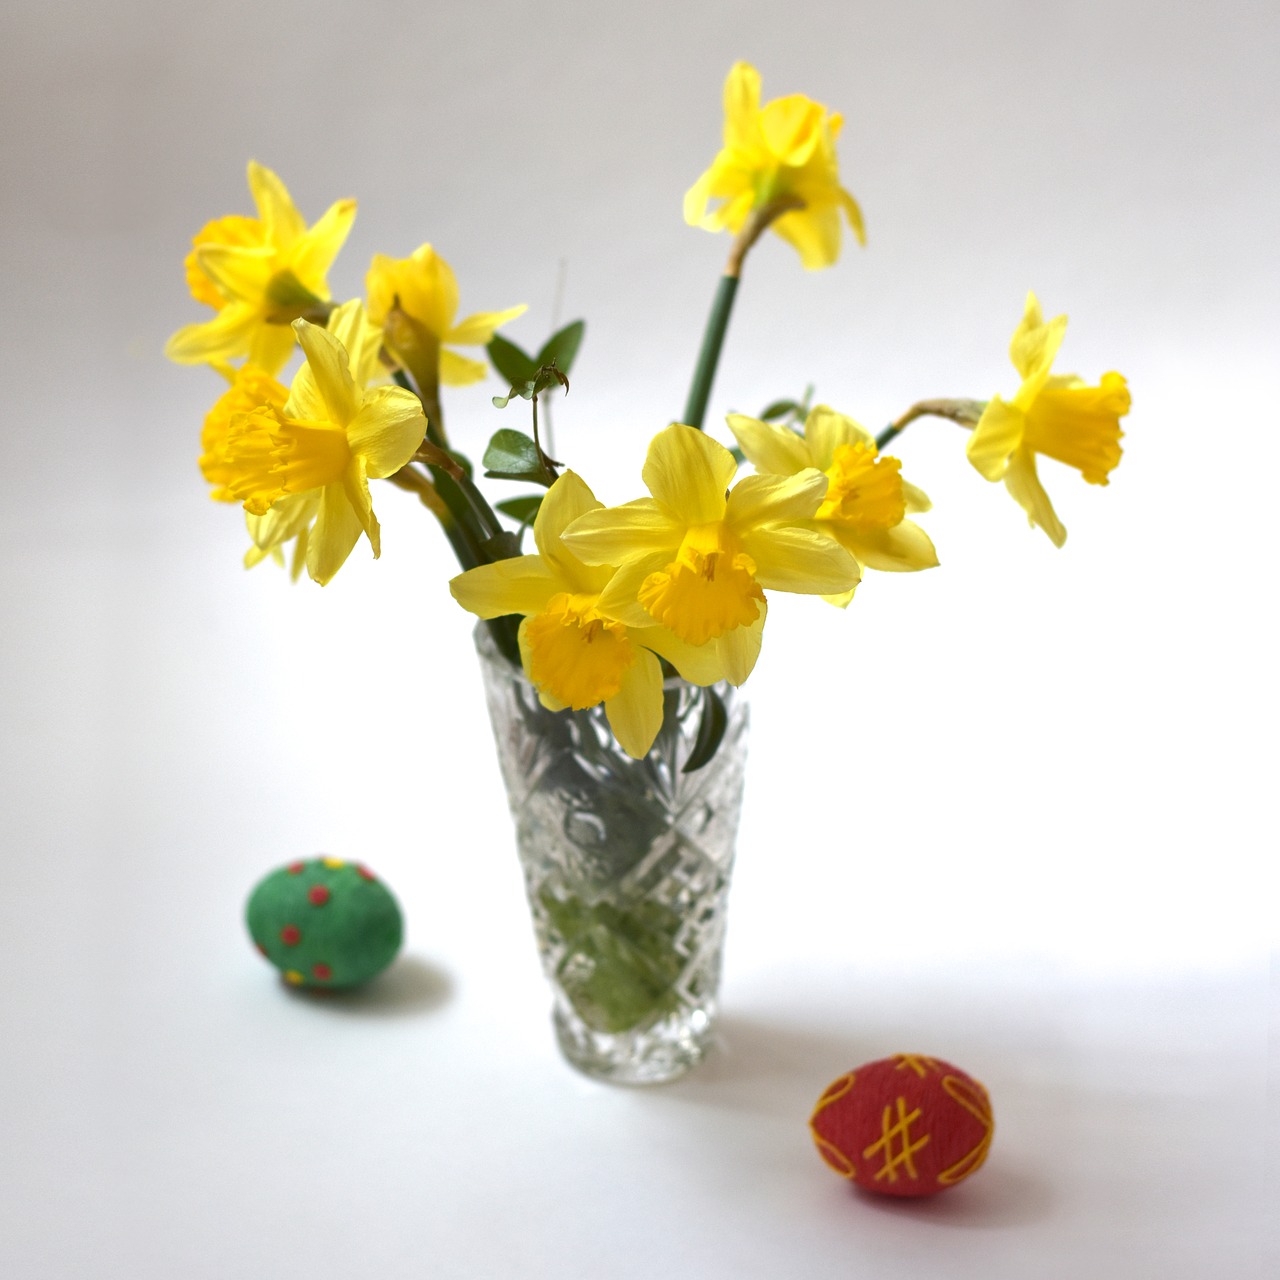 daffodils  daffodil  flower free photo